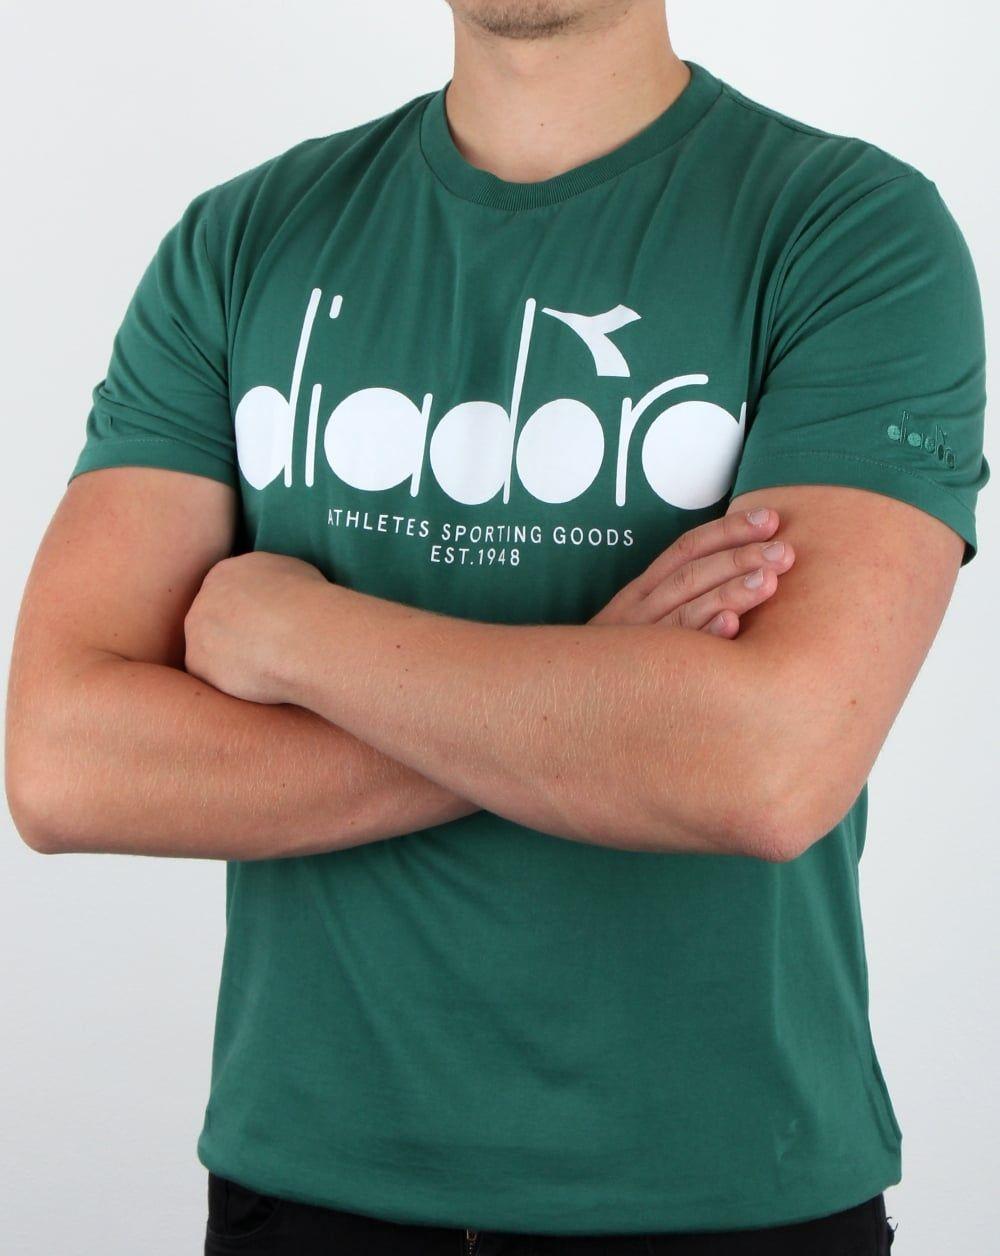 Diadora Shirt Logo - Diadora Logo T Shirt Posy Green, Men's, Tee, Crew Neck